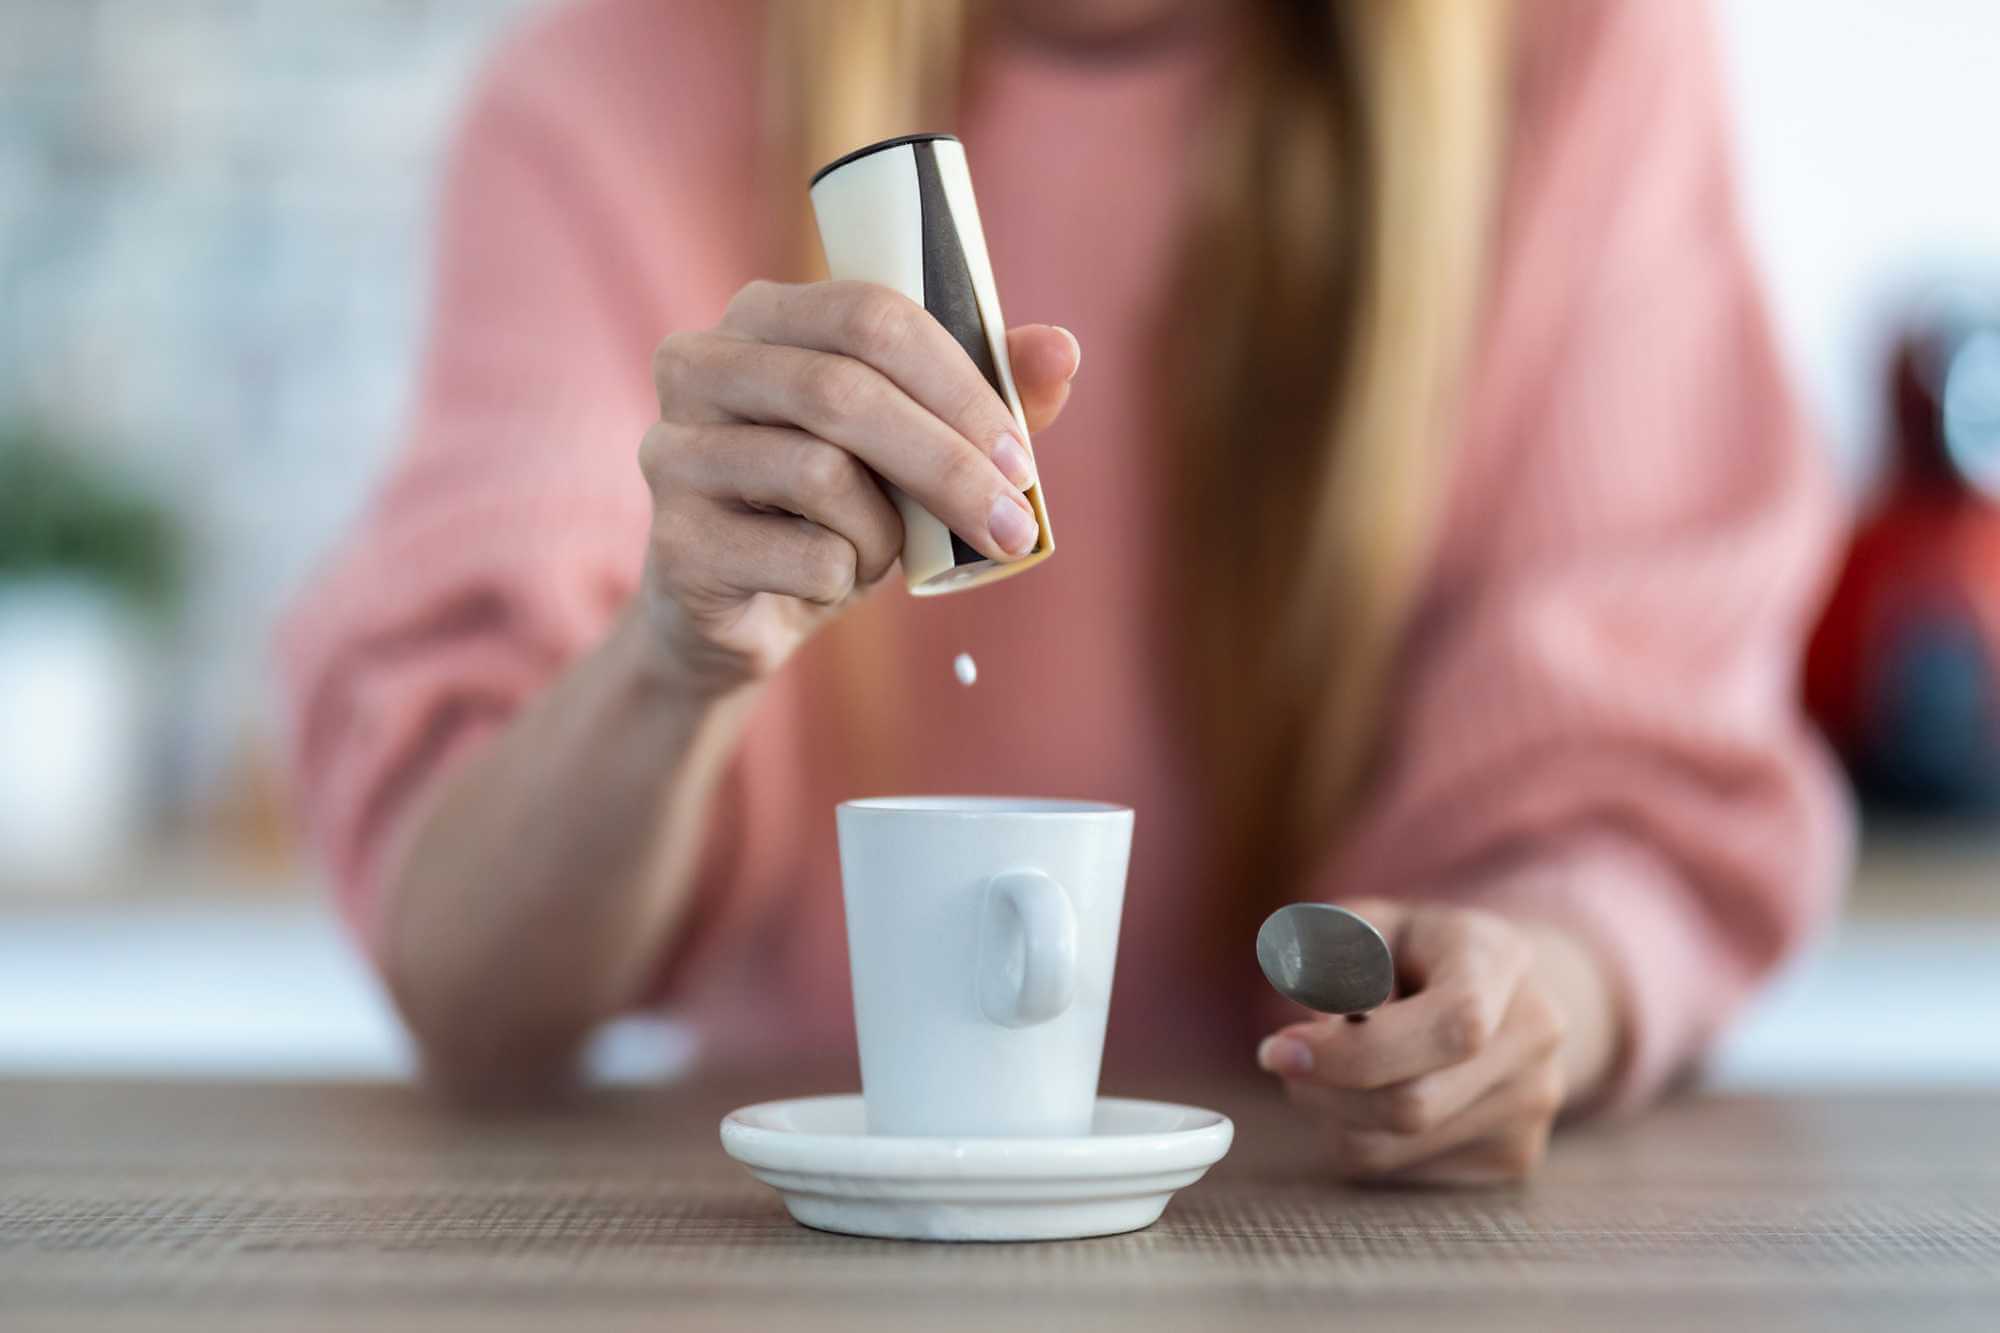 žena dává do kávy tabletu sladidla